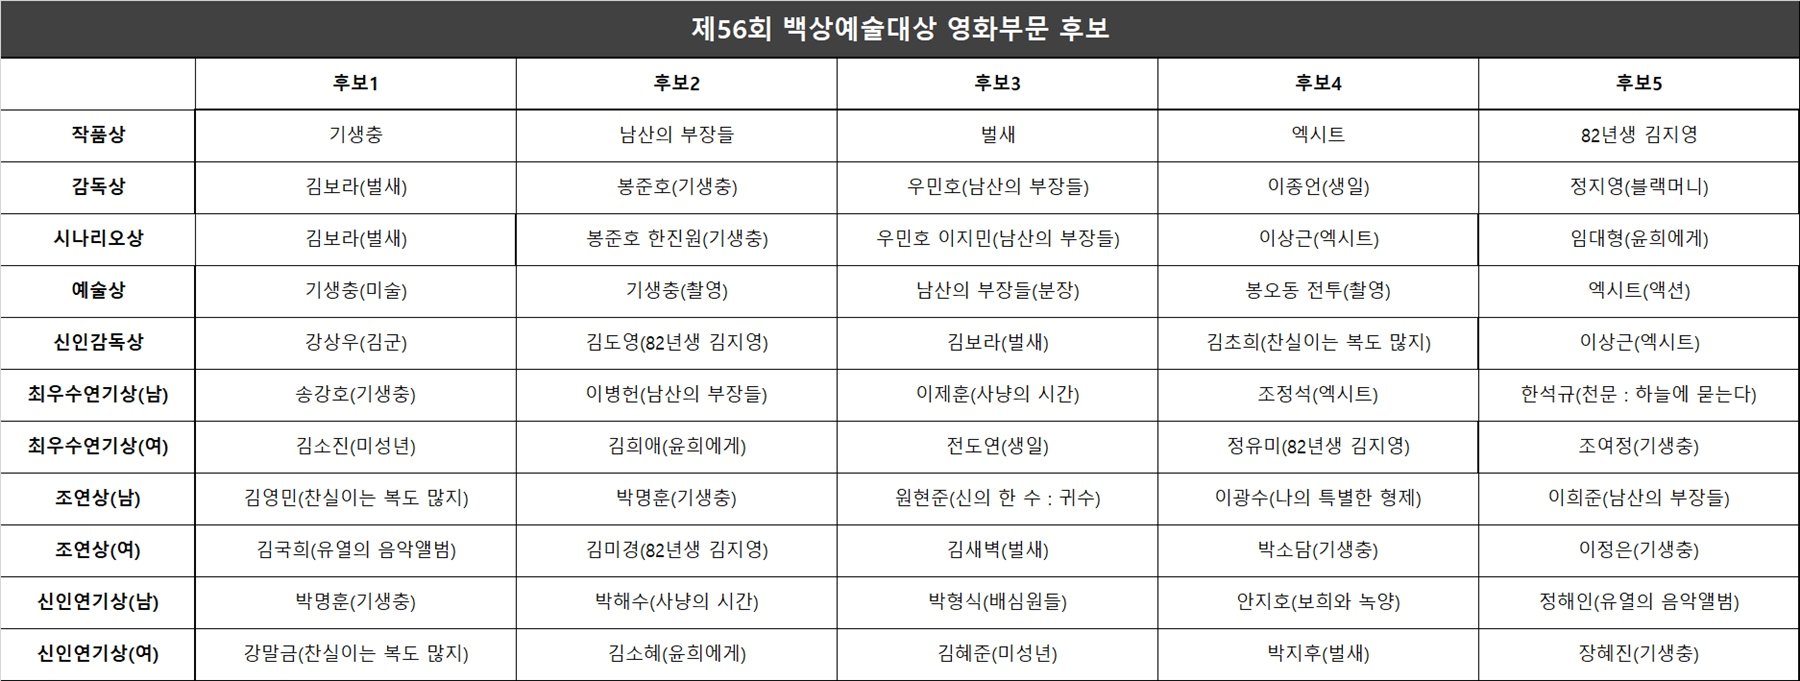 56회 백상예술대상, TV·영화·연극 최종 후보 공개